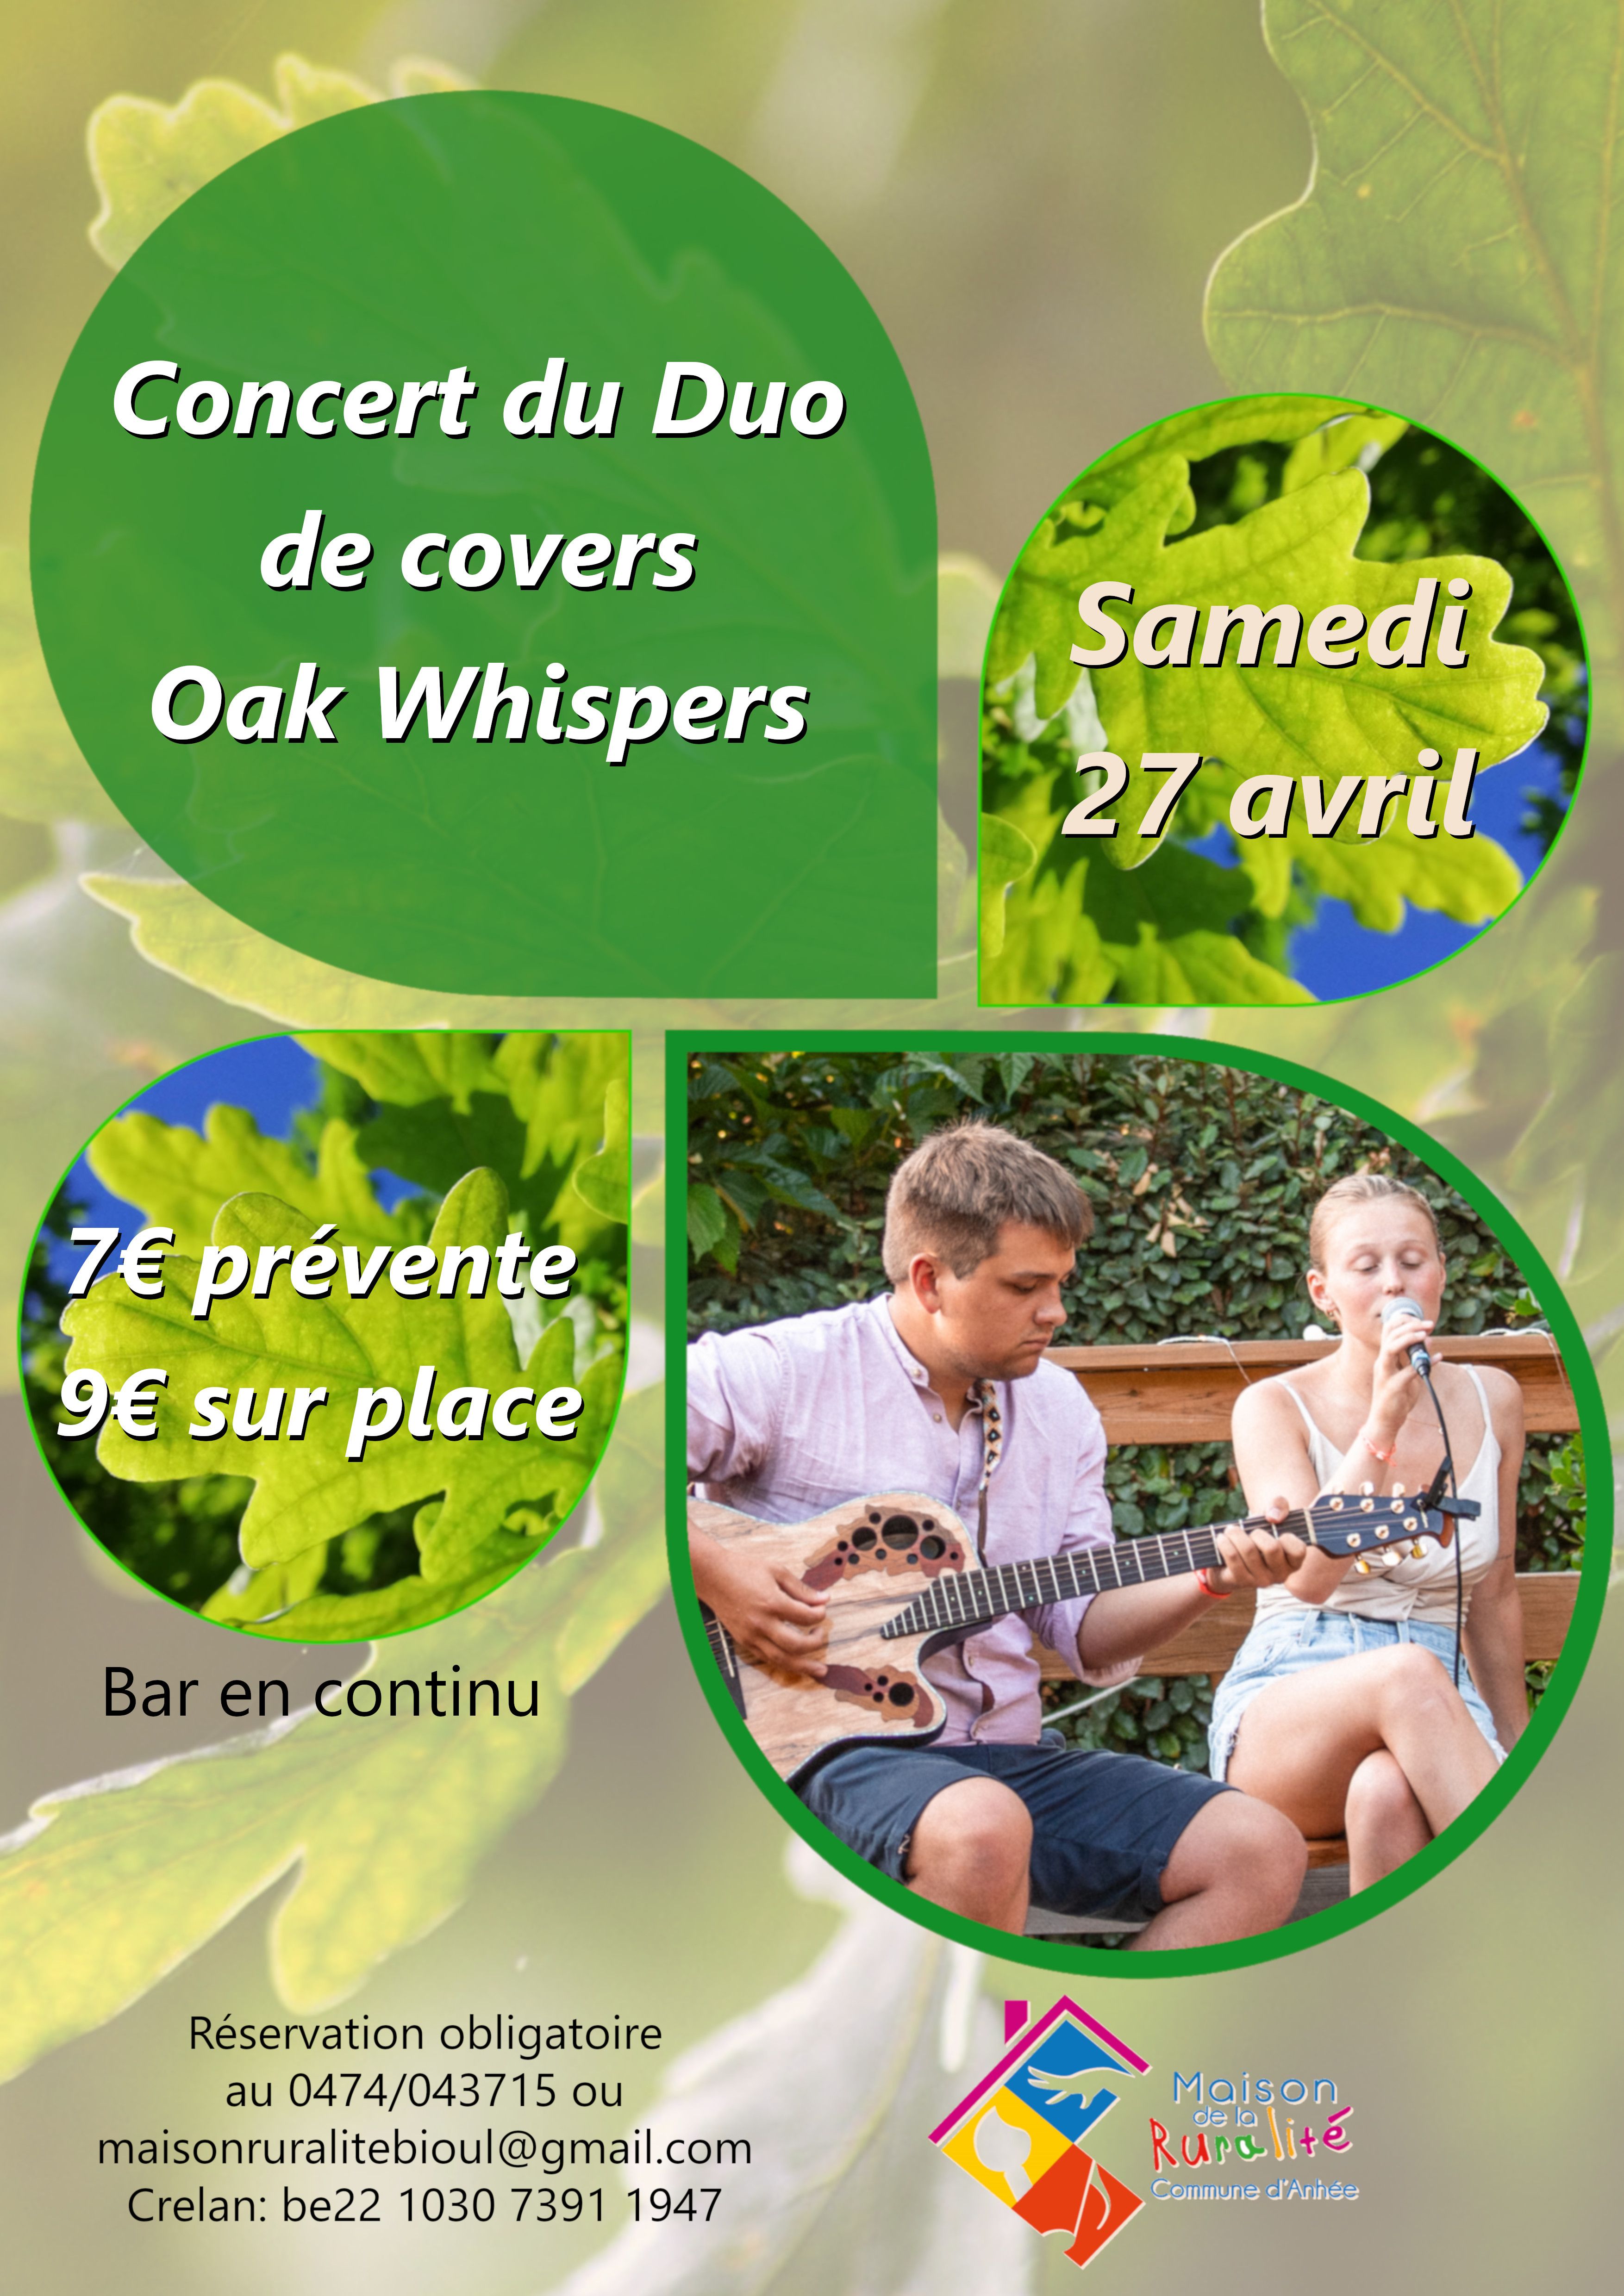 Concert des Oak Whispers : concert de covers par 2 jeunes et talentueux musiciens